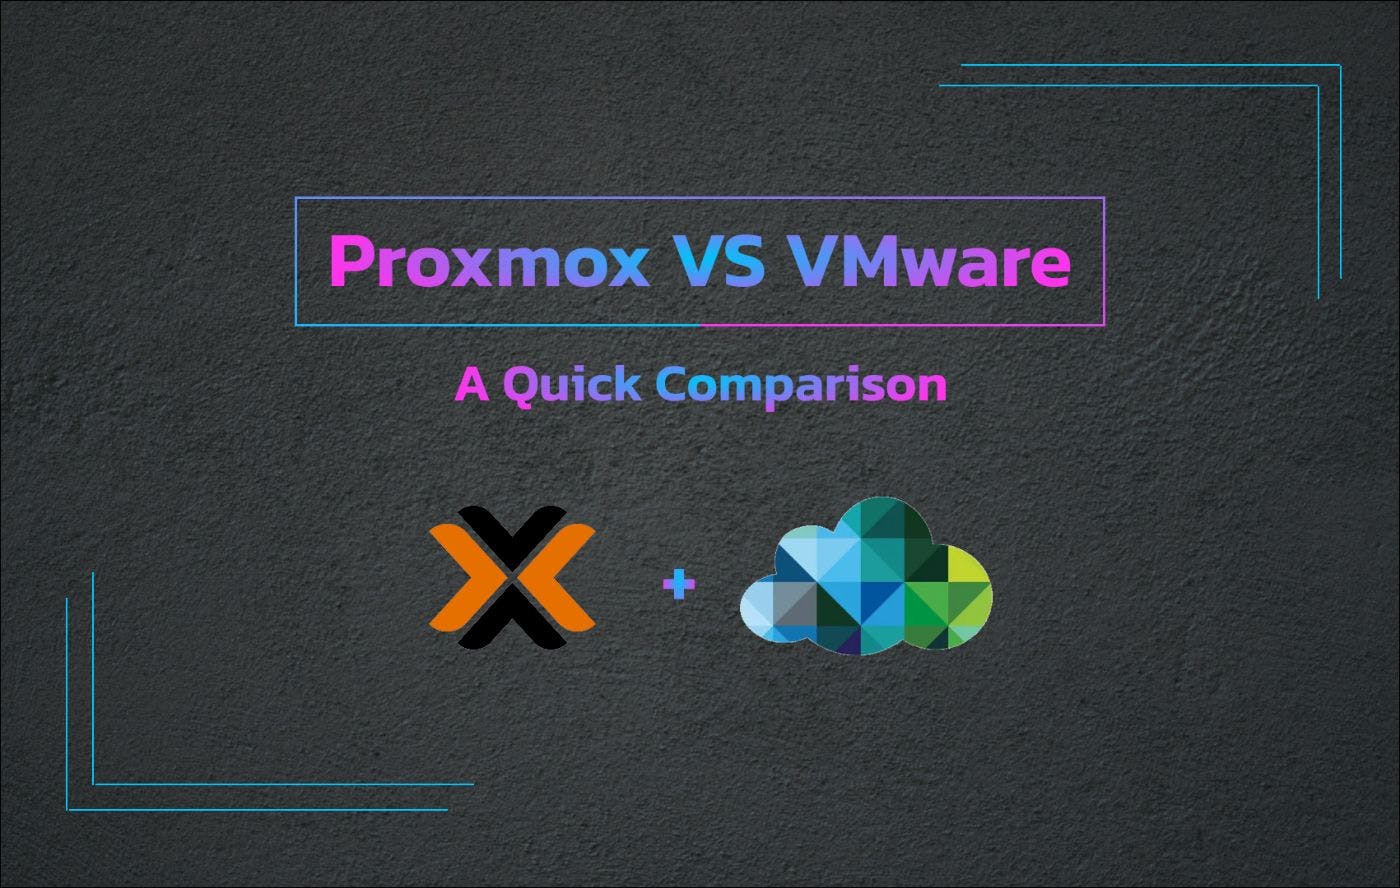 /proxmox-vs-vmware-a-quick-comparison feature image